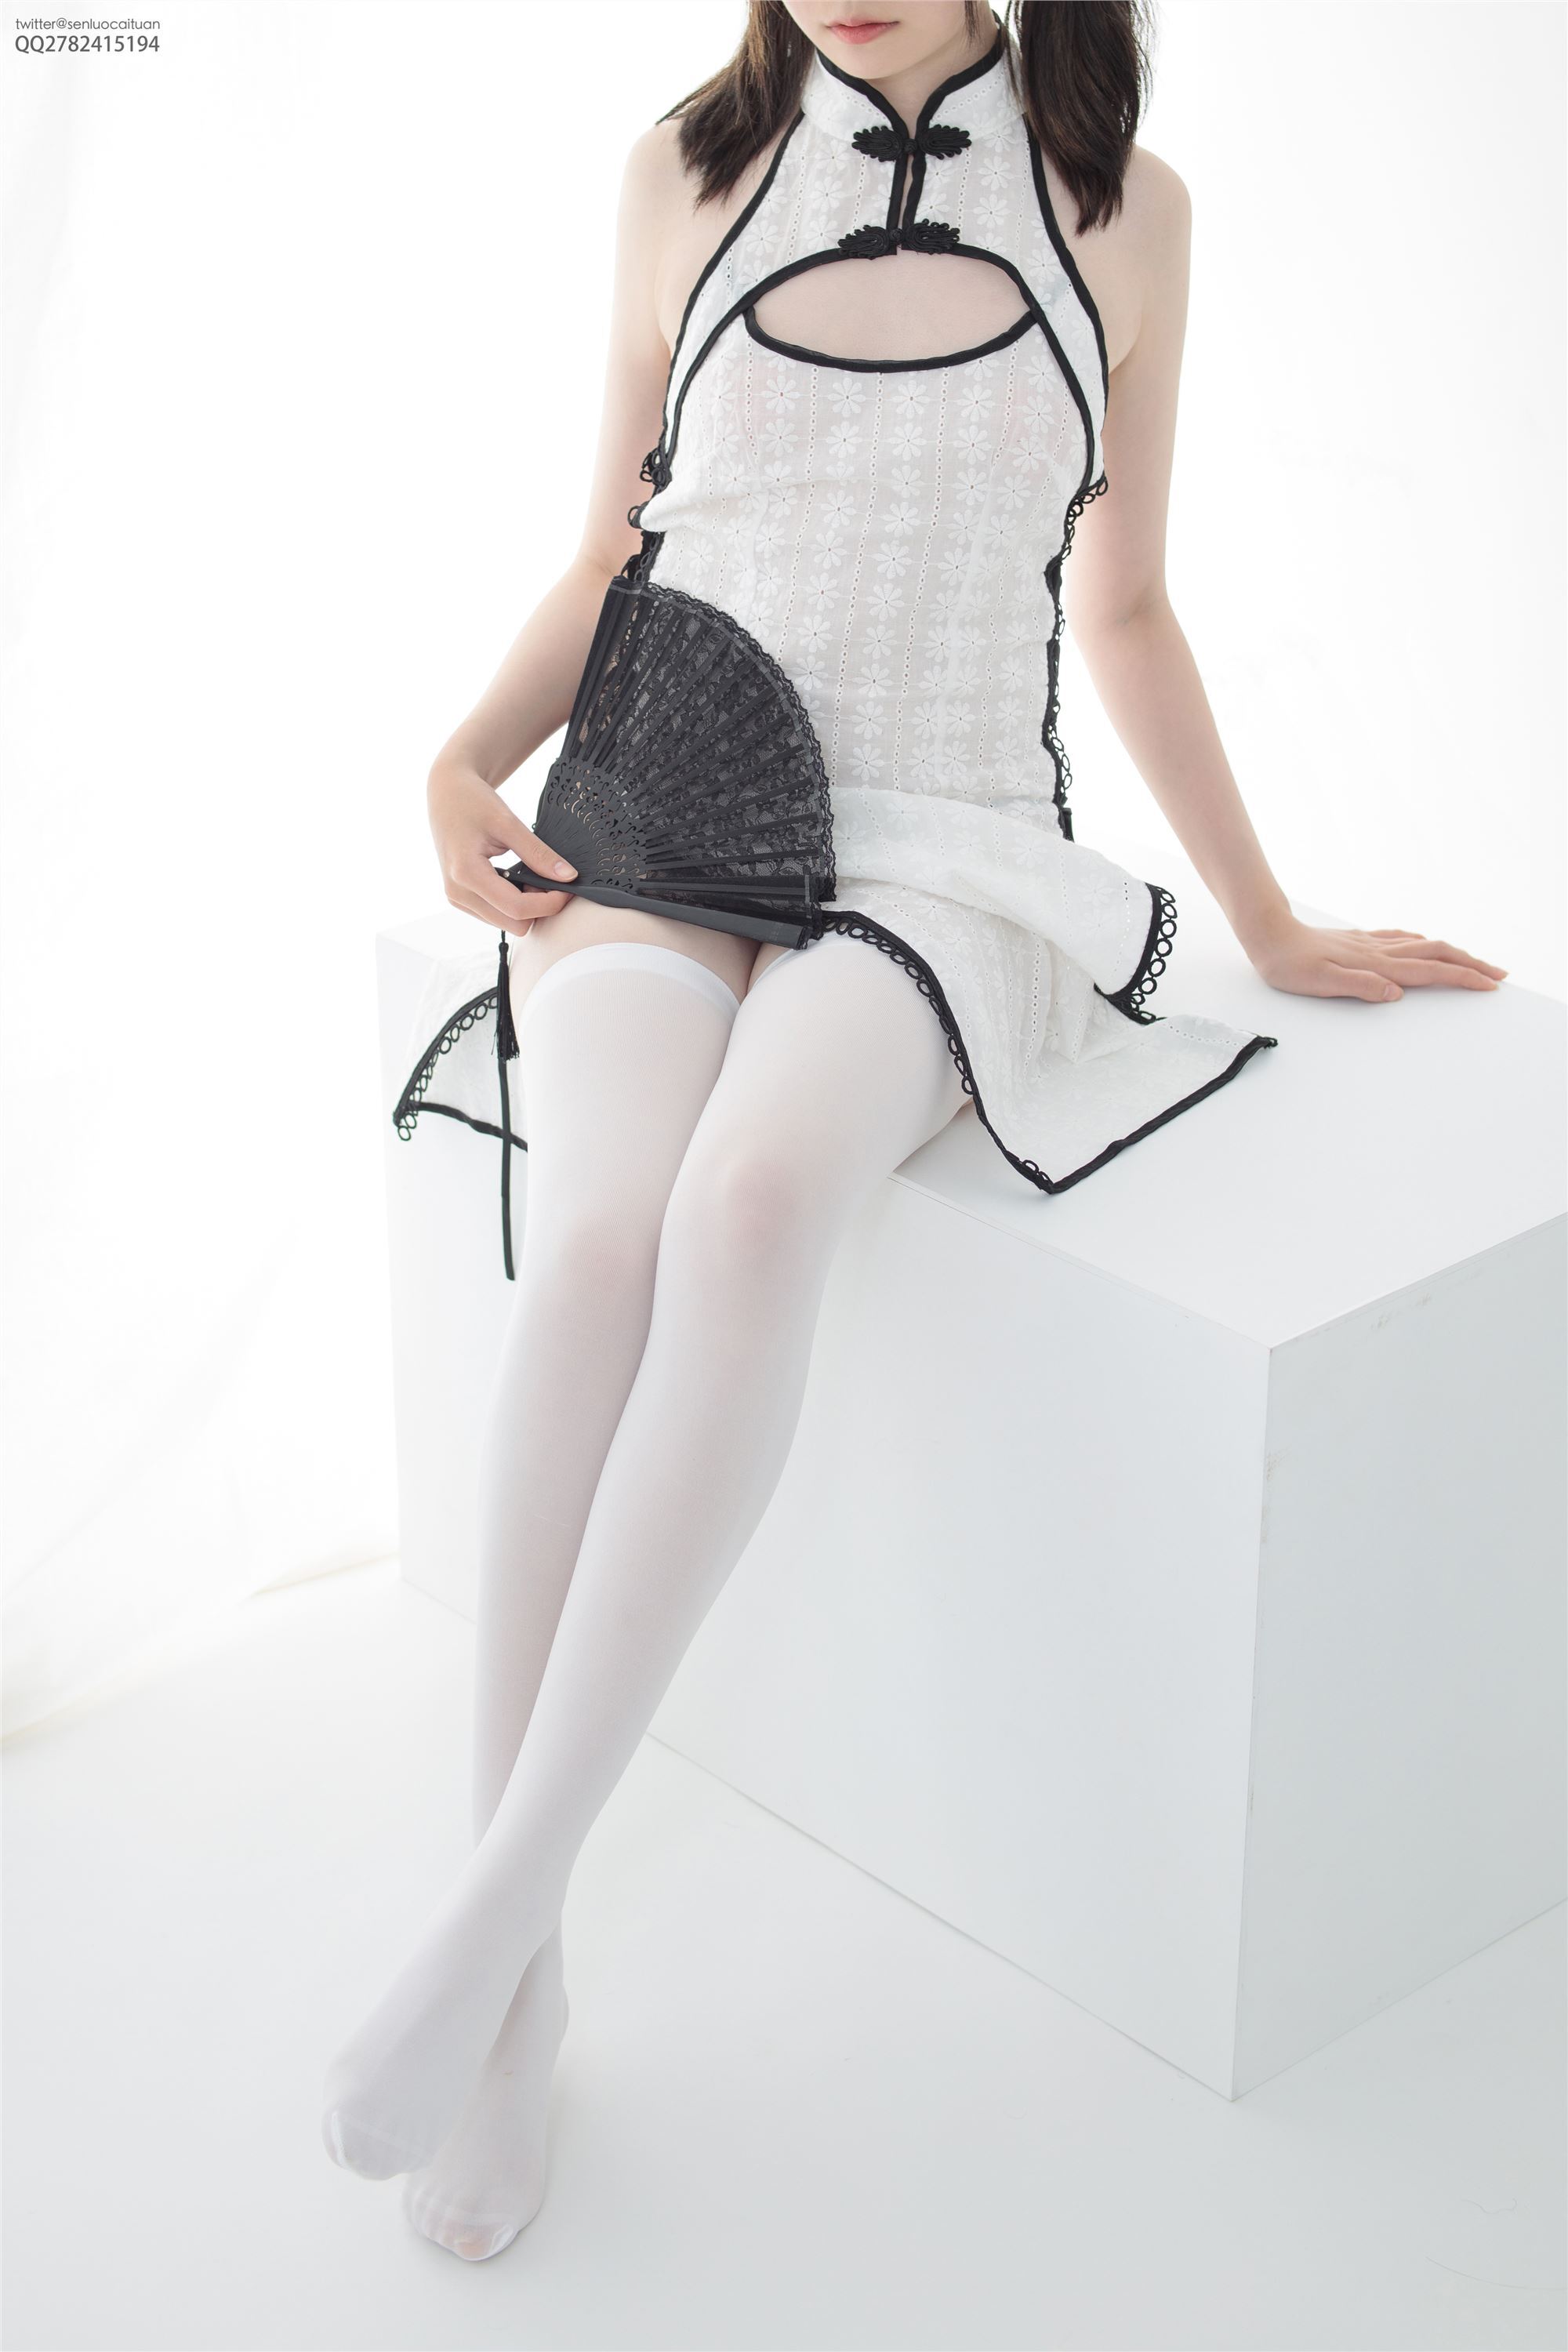 森萝财团萝莉丝足写真 JKFUN-035 Aika 慵懒的旗袍